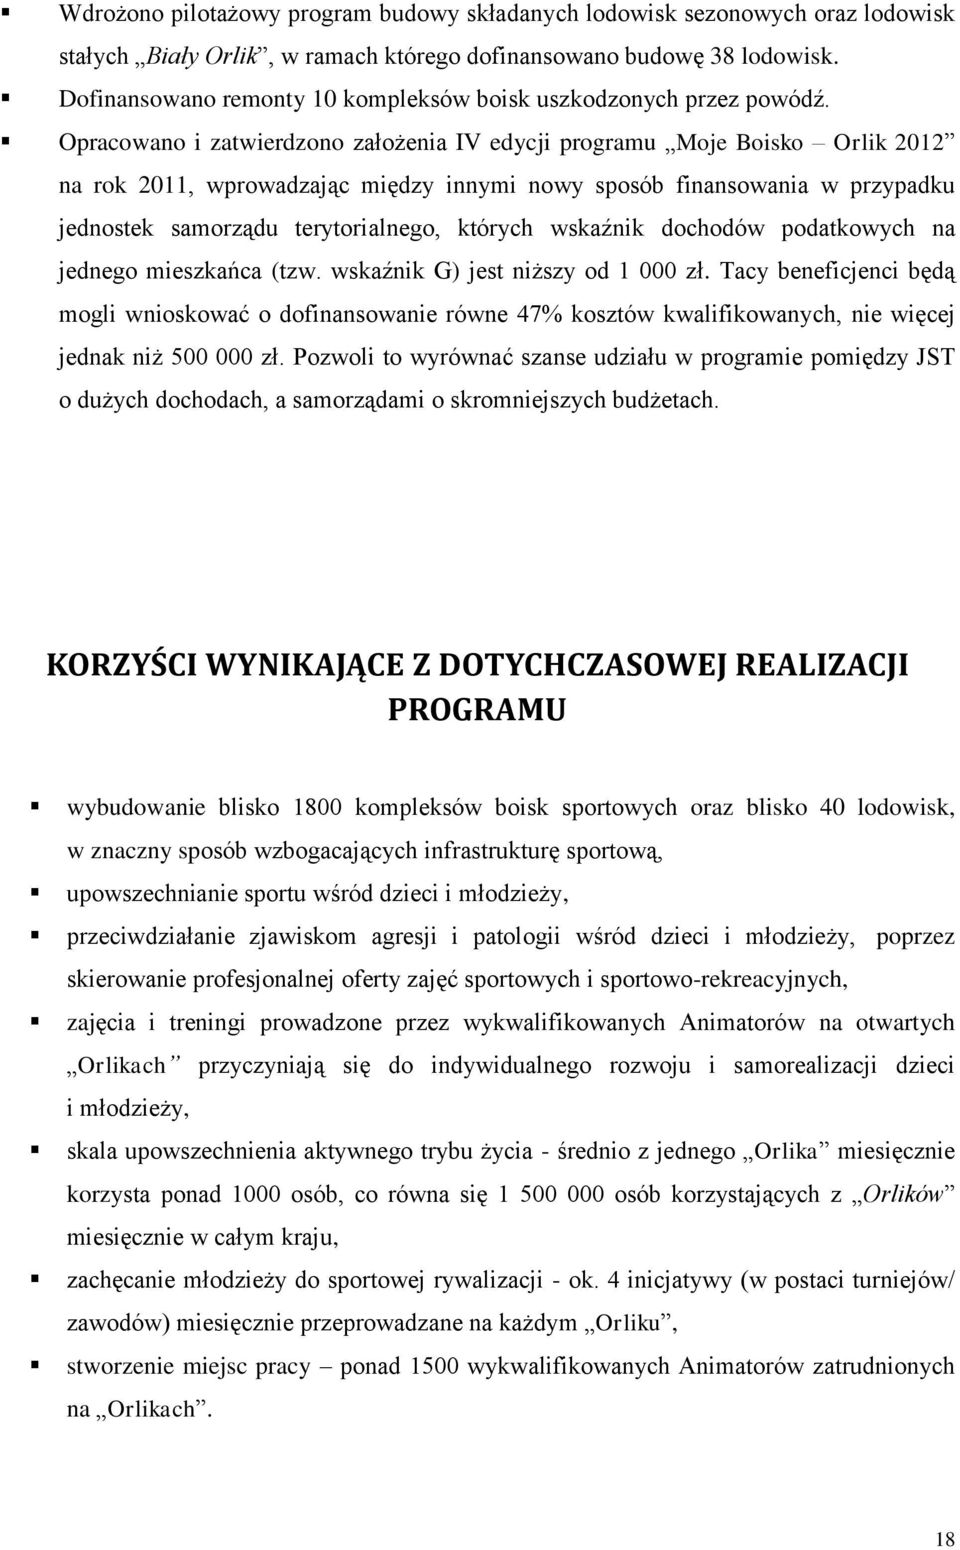 Opracowano i zatwierdzono założenia IV edycji programu Moje Boisko Orlik 2012 na rok 2011, wprowadzając między innymi nowy sposób finansowania w przypadku jednostek samorządu terytorialnego, których